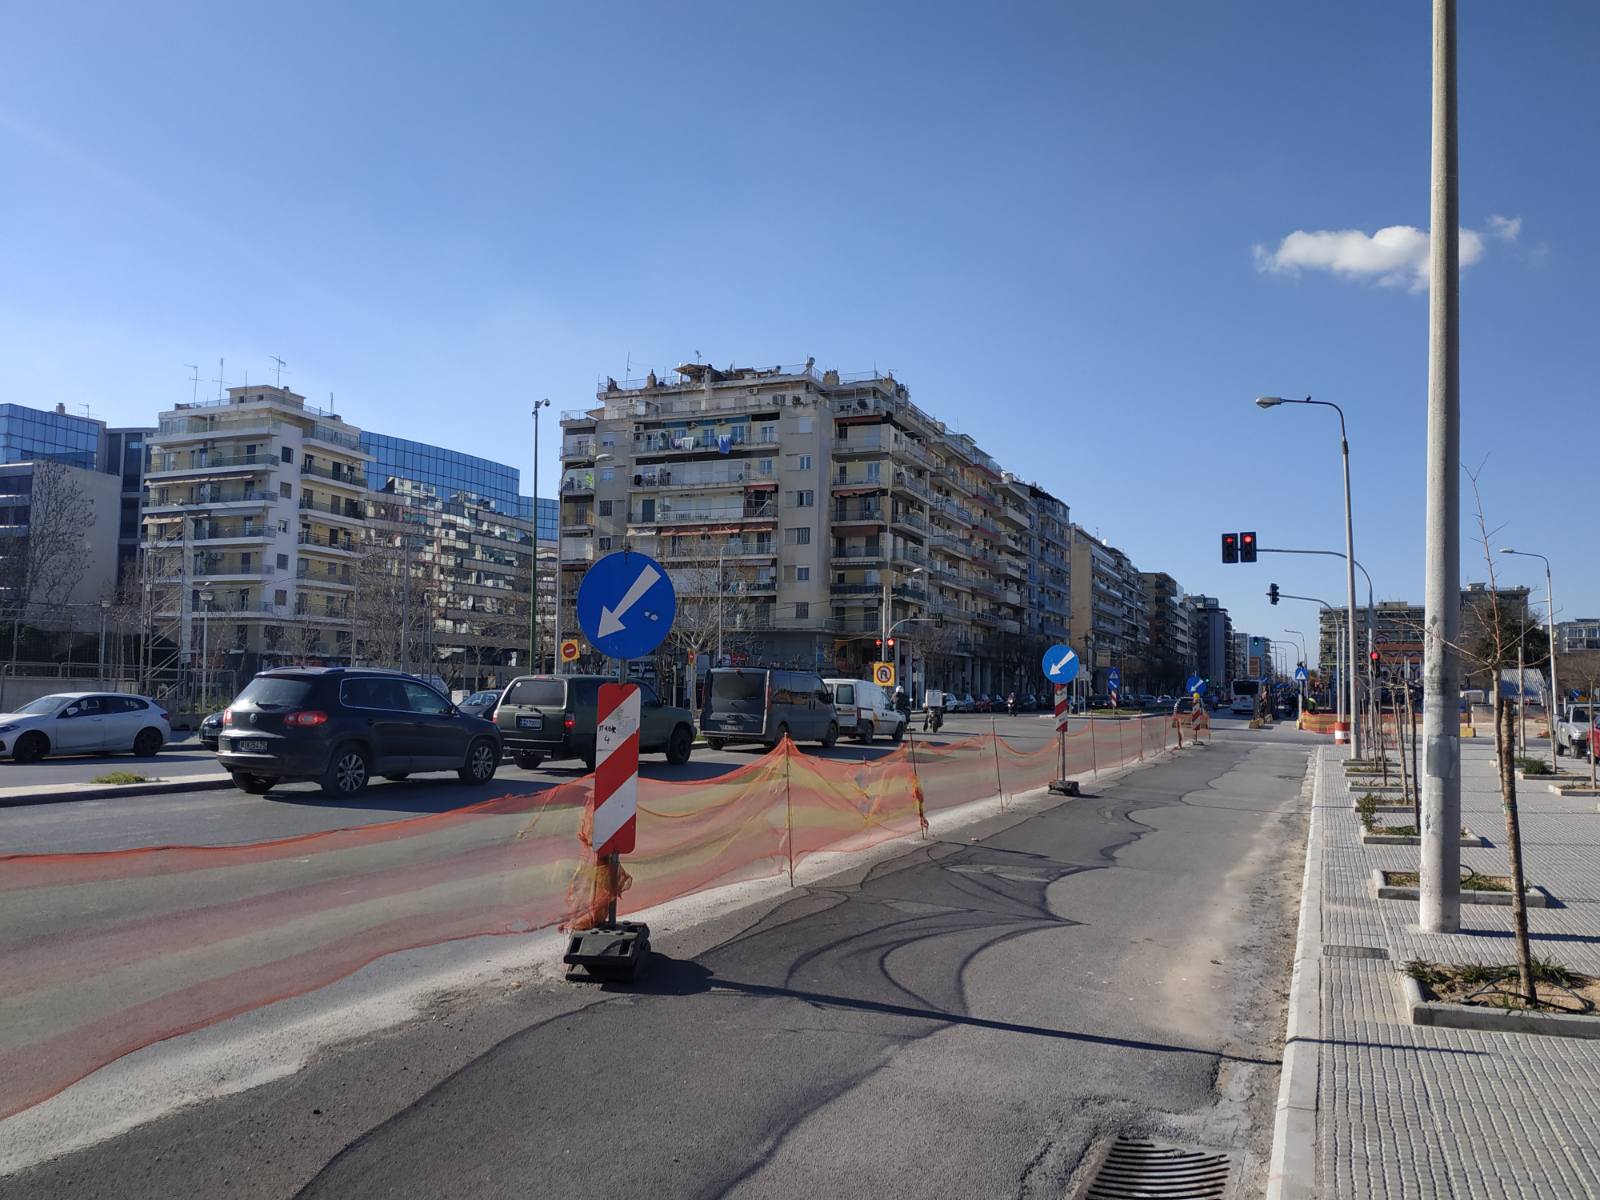 Θεσσαλονίκη: Αλλαγές στη Λειτουργία Αφετηριών/Στάσεων Λεωφορειακών Γραμμών στον Νέο Σιδηροδρομικό Σταθμό